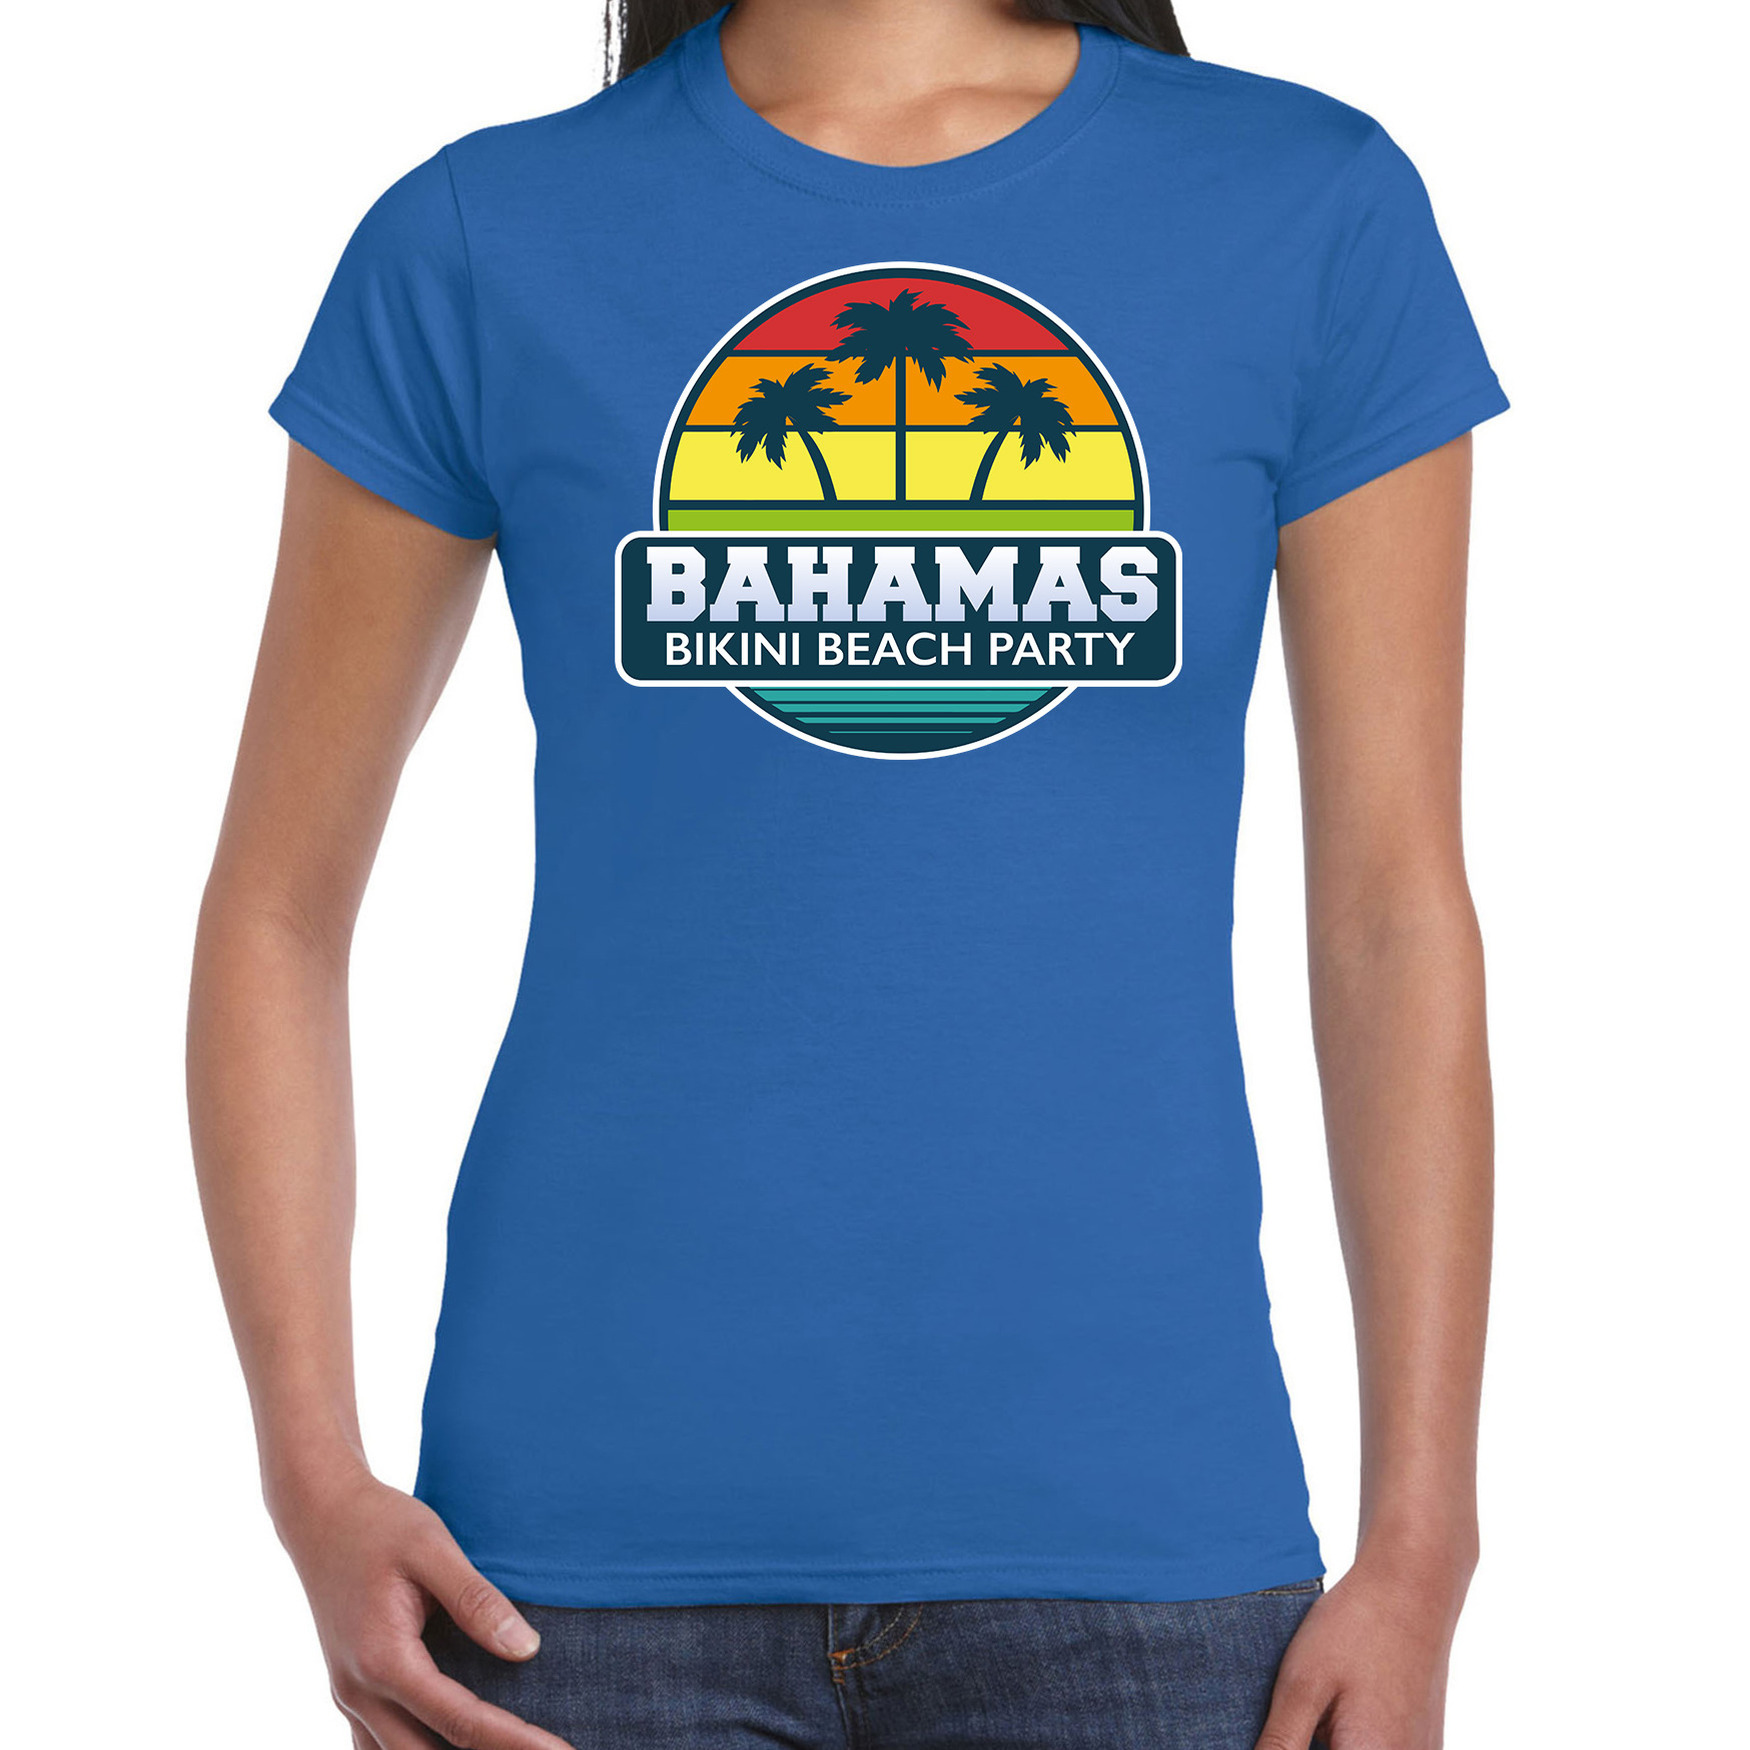 Bahamas zomer t-shirt - shirt Bahamas bikini beach party blauw voor dames